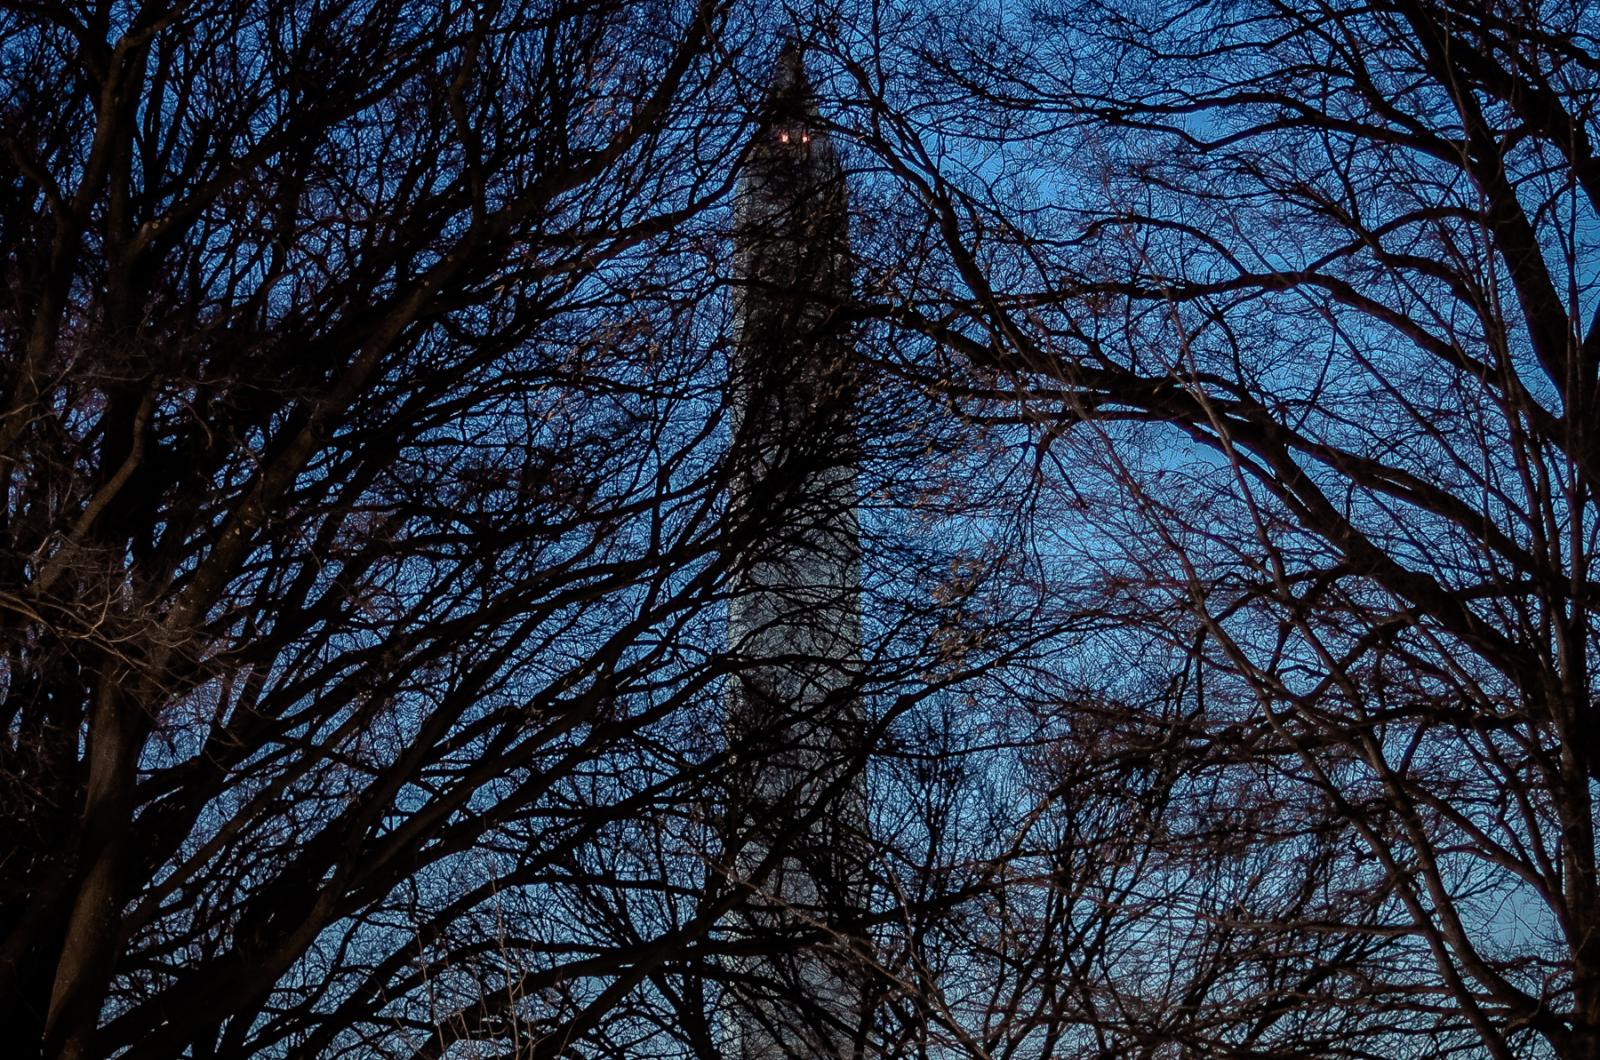 What I See - Washington Monument.